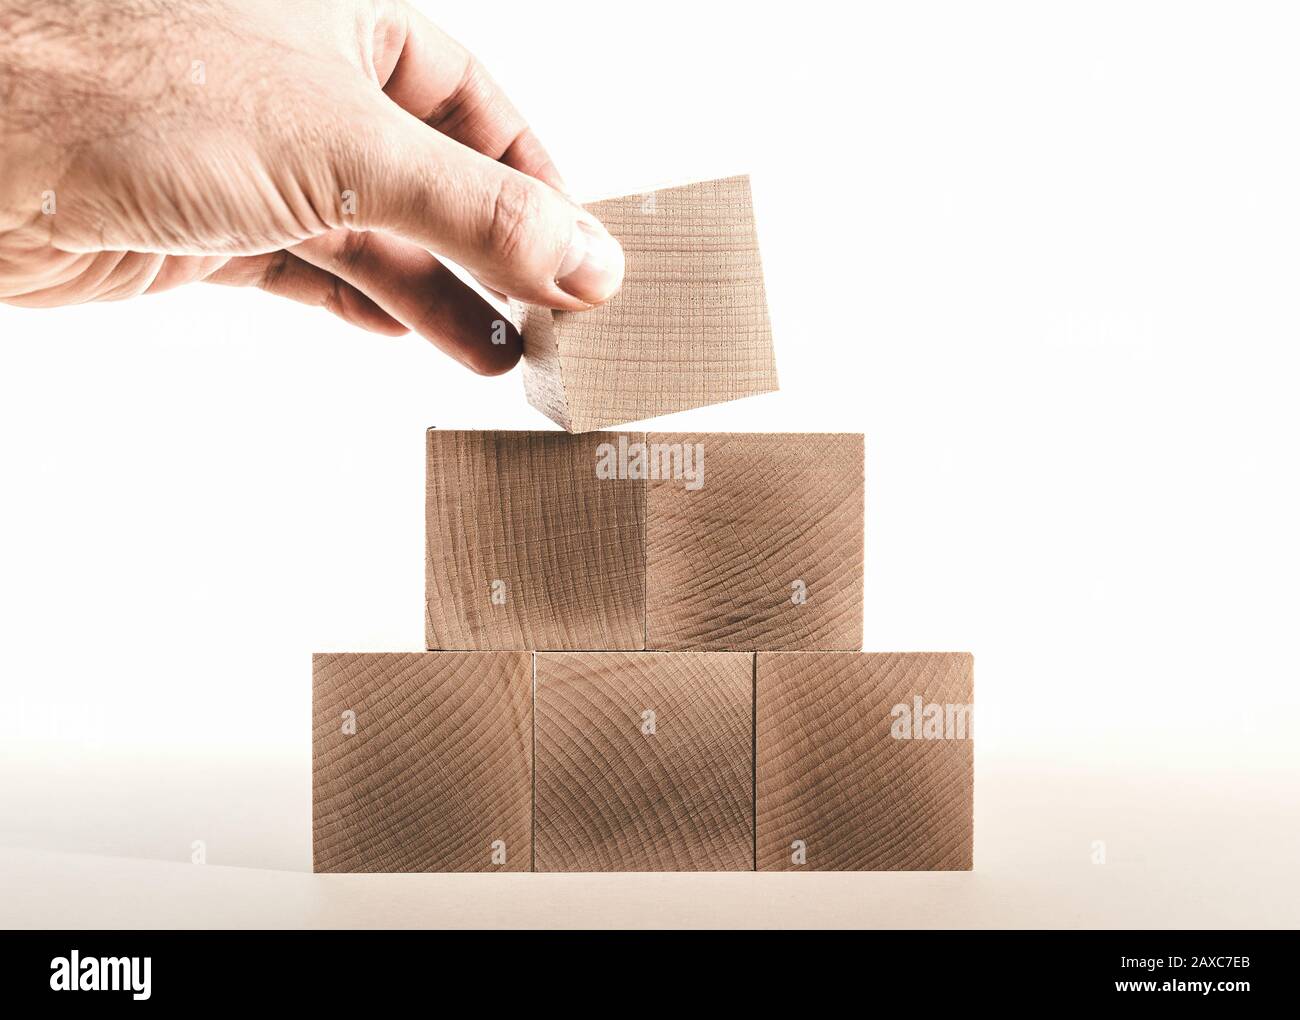 colocar a mano el último bloque de madera en la parte superior de la pirámide, concepto de crecimiento de negocio Foto de stock